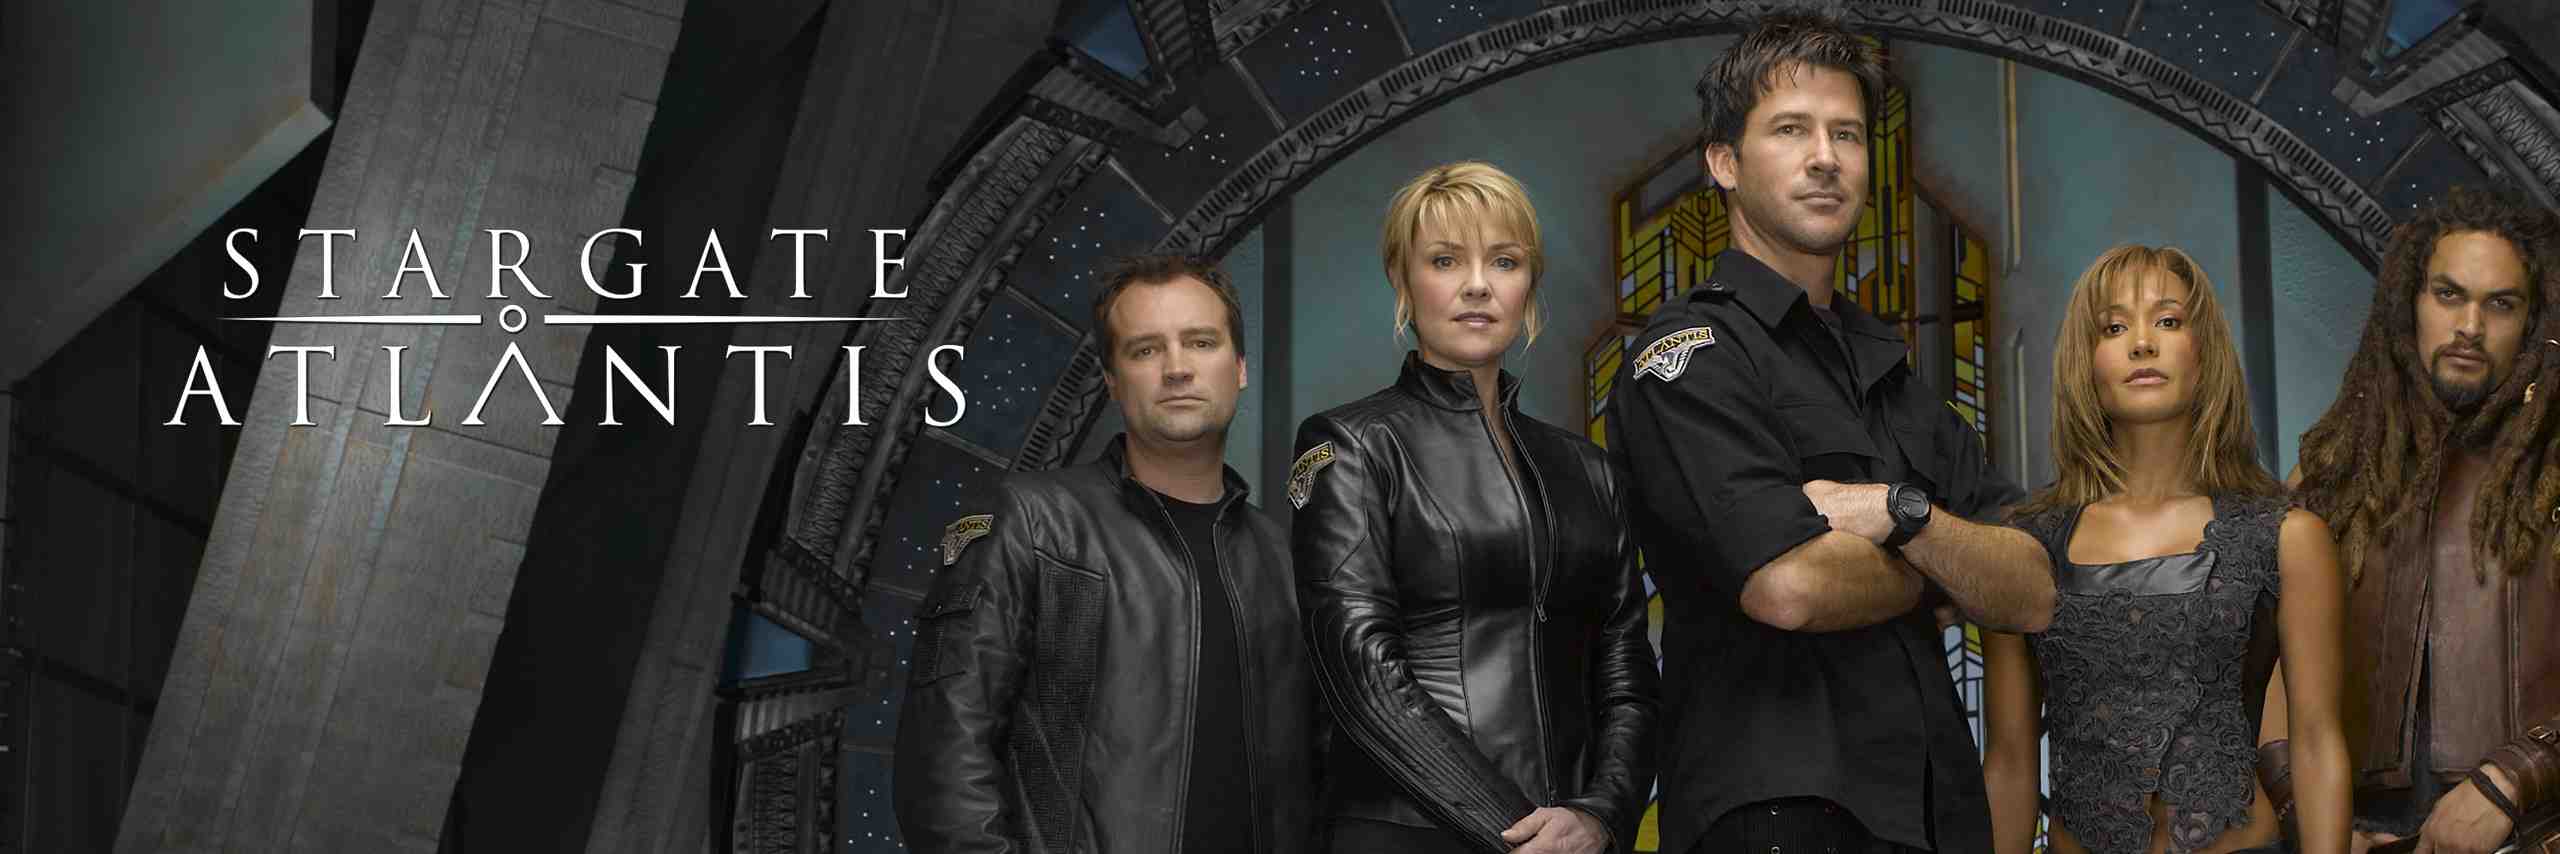 Stargate Atlantis en streaming